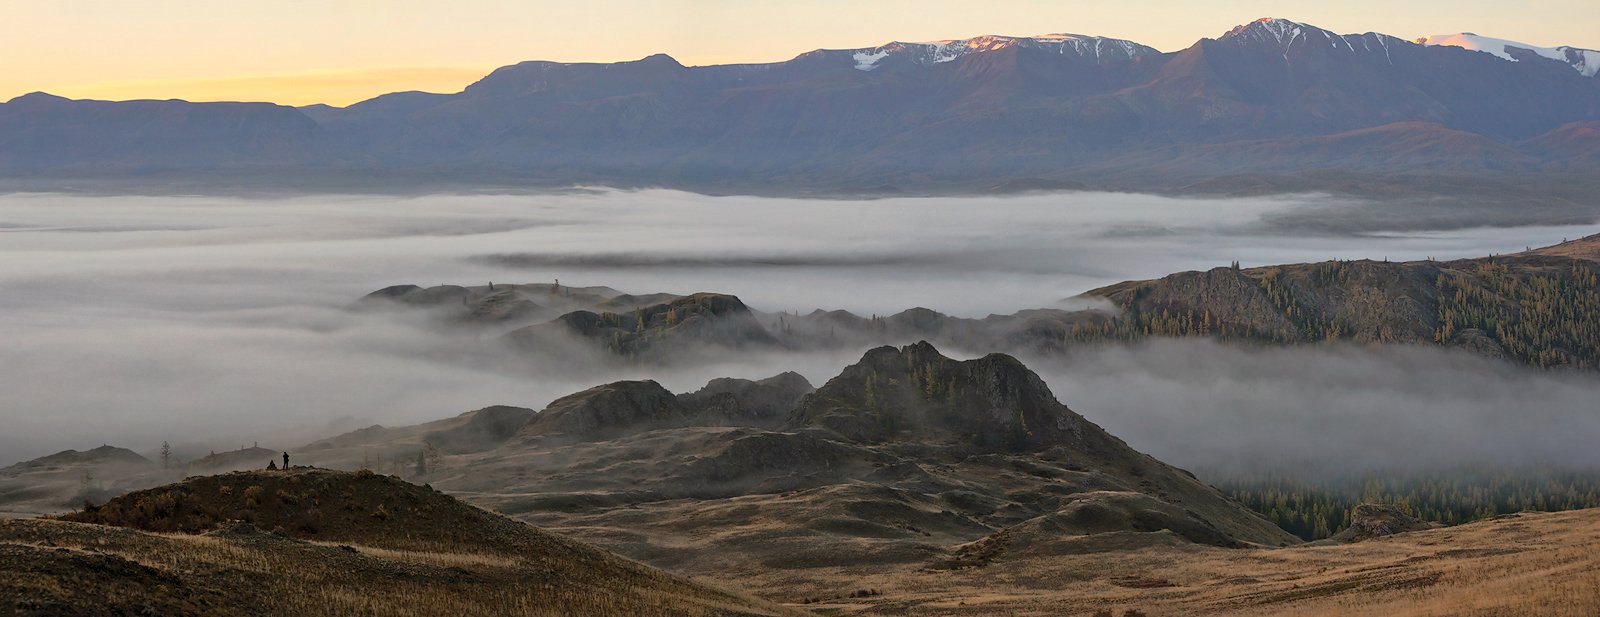 горы, облака, туман, курай, северо-чуйский хребет, горный алтай, республика алтай, Валерий Пешков